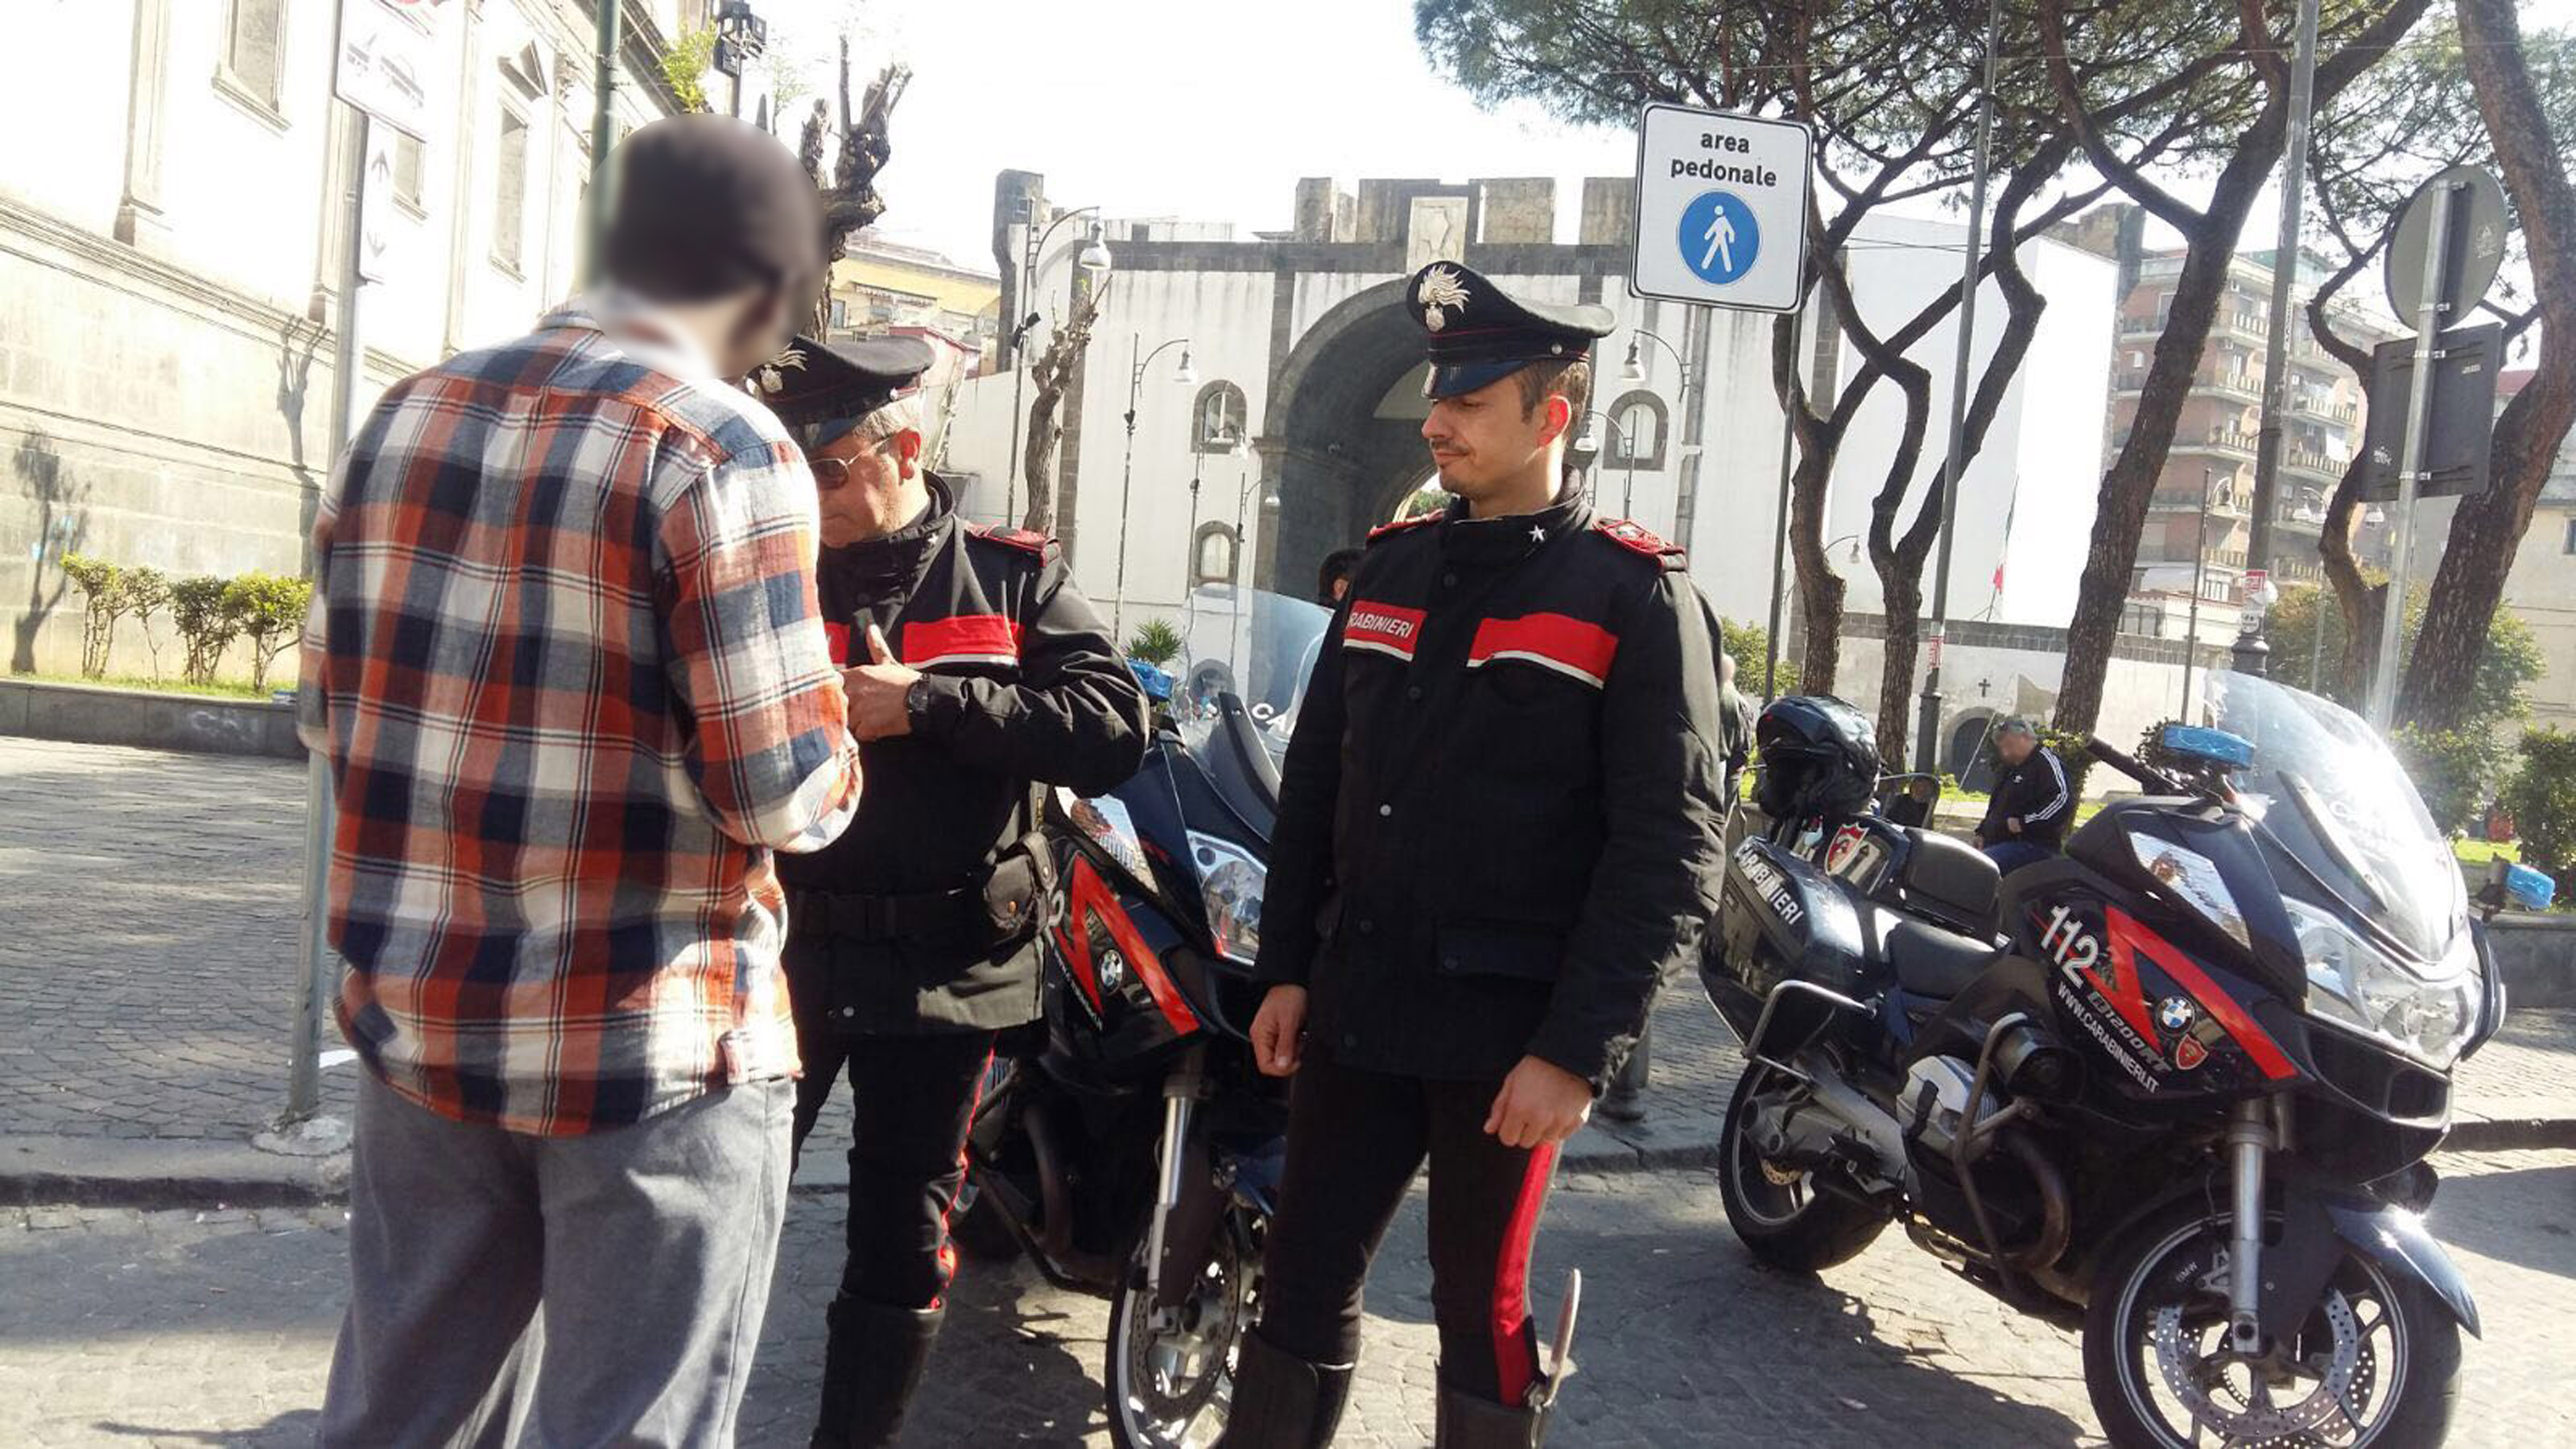  Napoli, ennesima rissa tra extracomunitari a Porta Capuana: 3 arresti